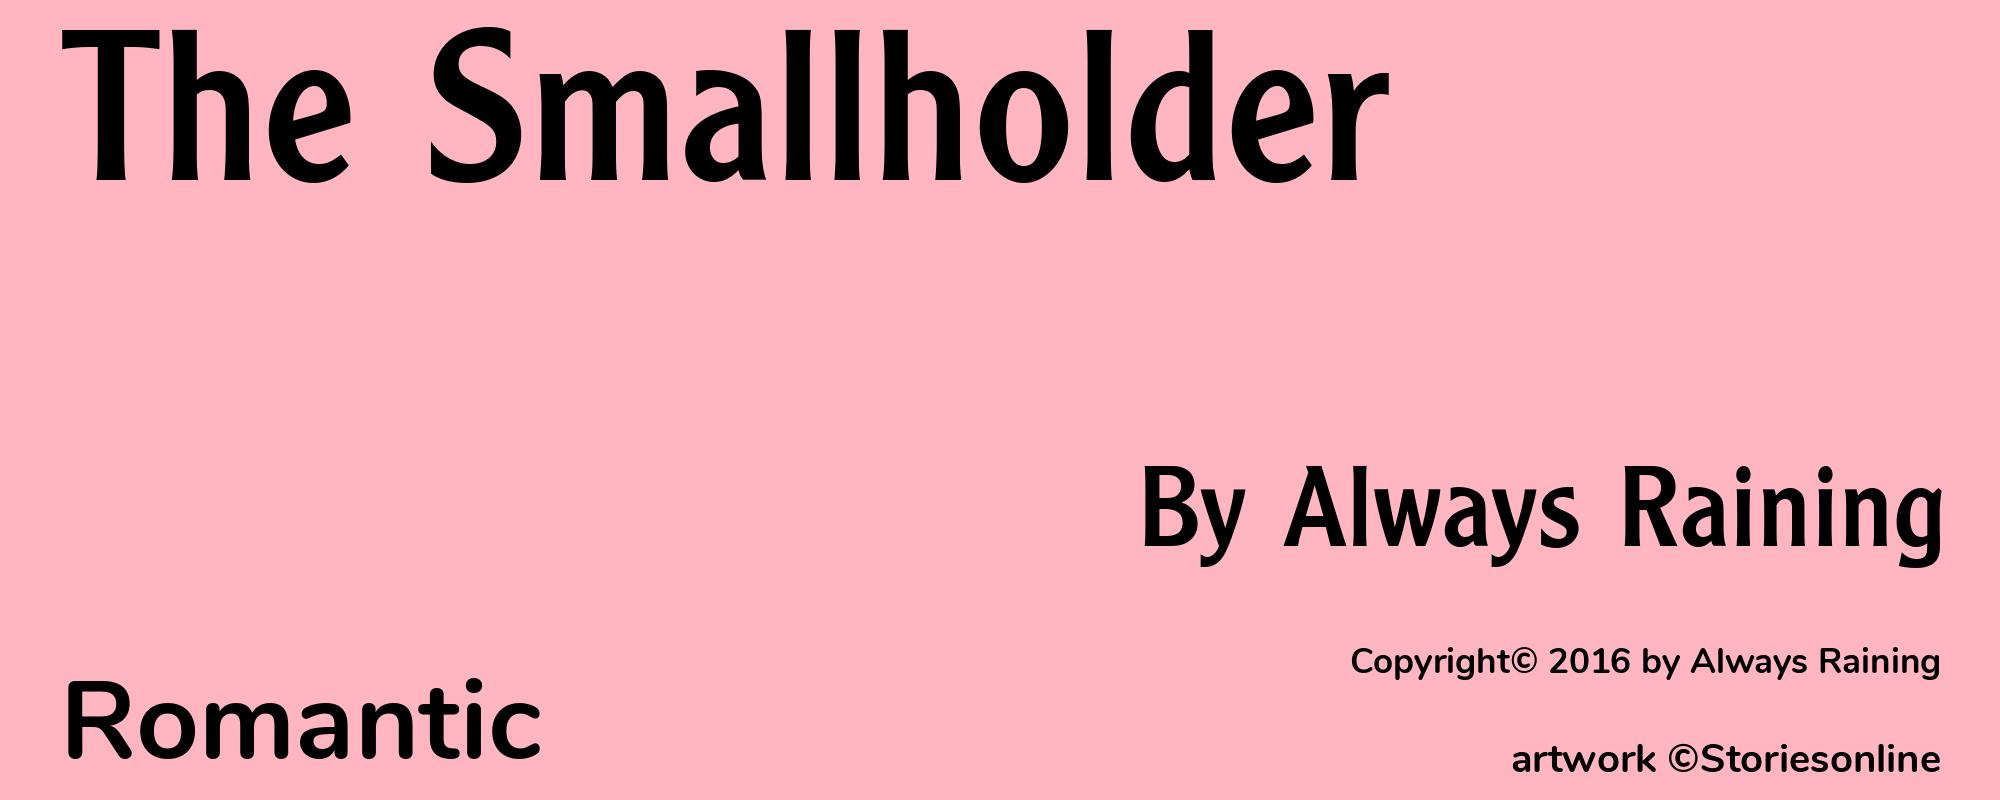 The Smallholder - Cover